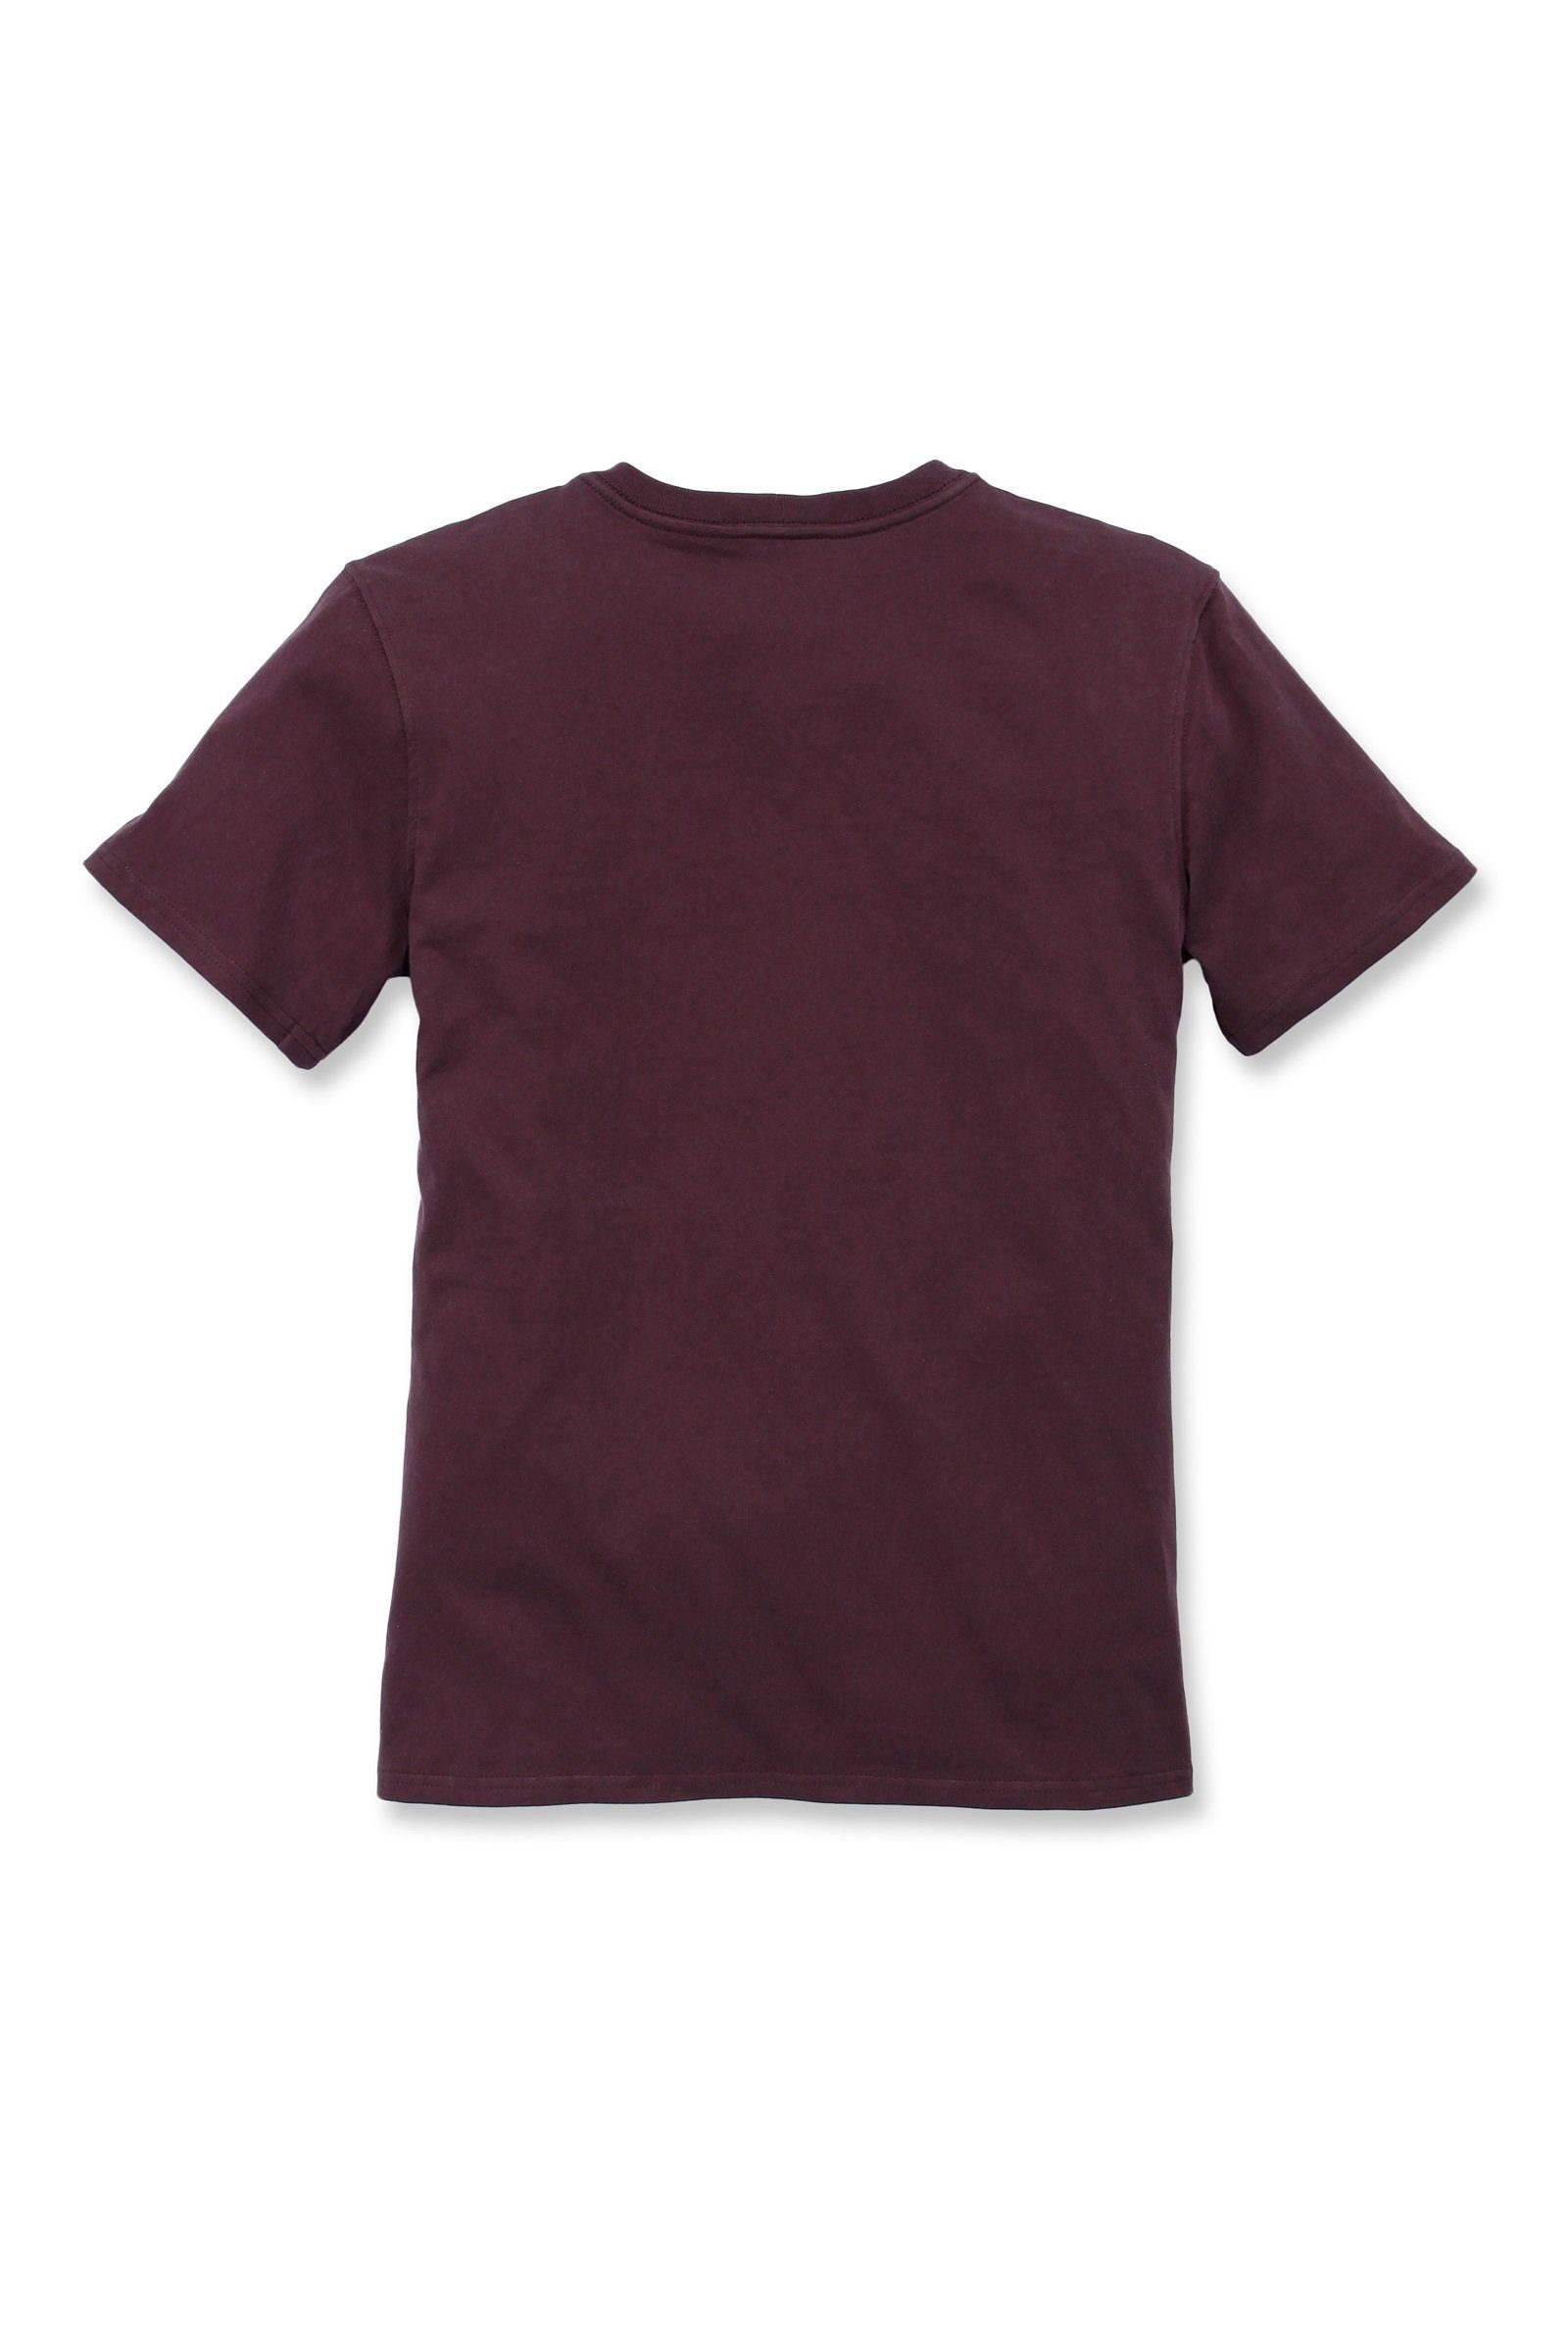 T-Shirt Fit Heavyweight Short-Sleeve Loose wine Adult Pocket T-Shirt Carhartt Carhartt deep Damen